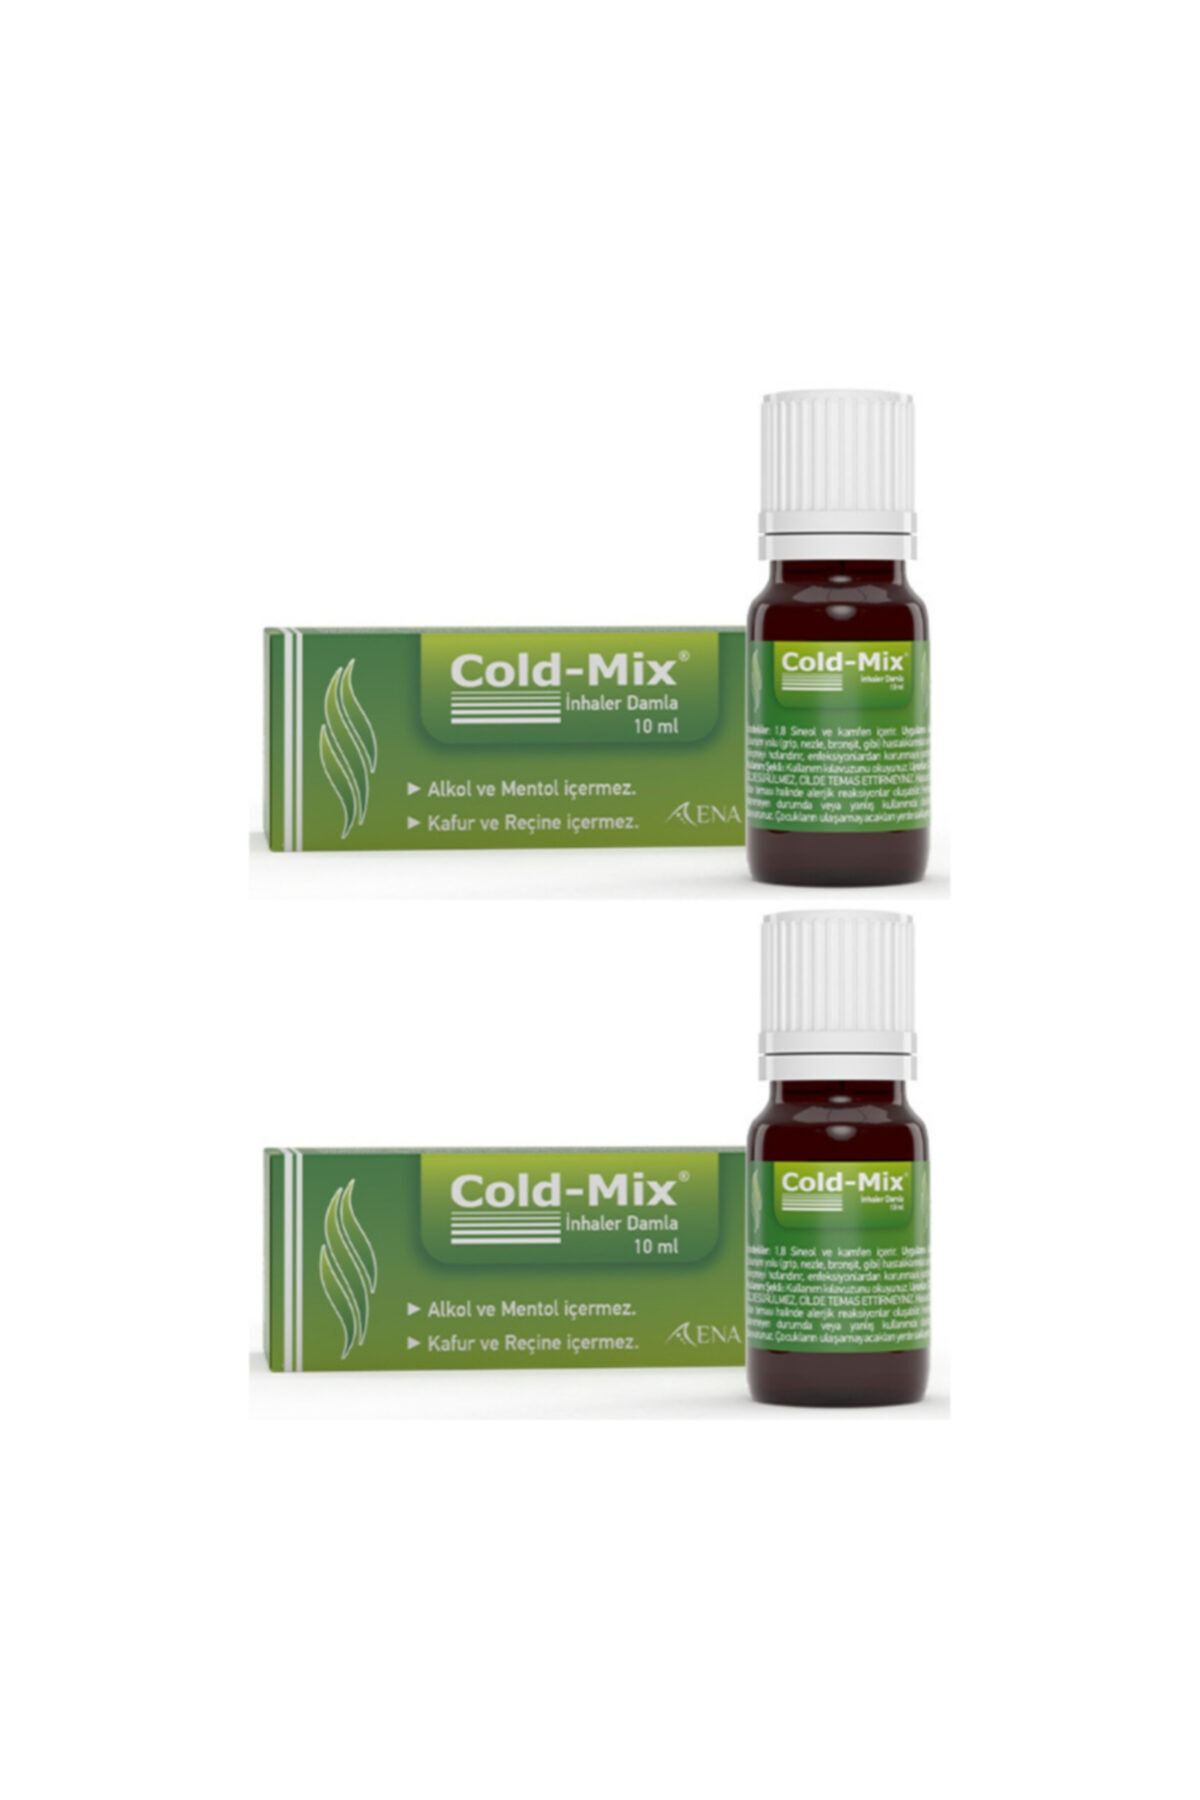 Cold-Mix Inhaler Okaliptüs Ve Ladin Yağları Içeren Inhaler Damla 10 ml (2li)